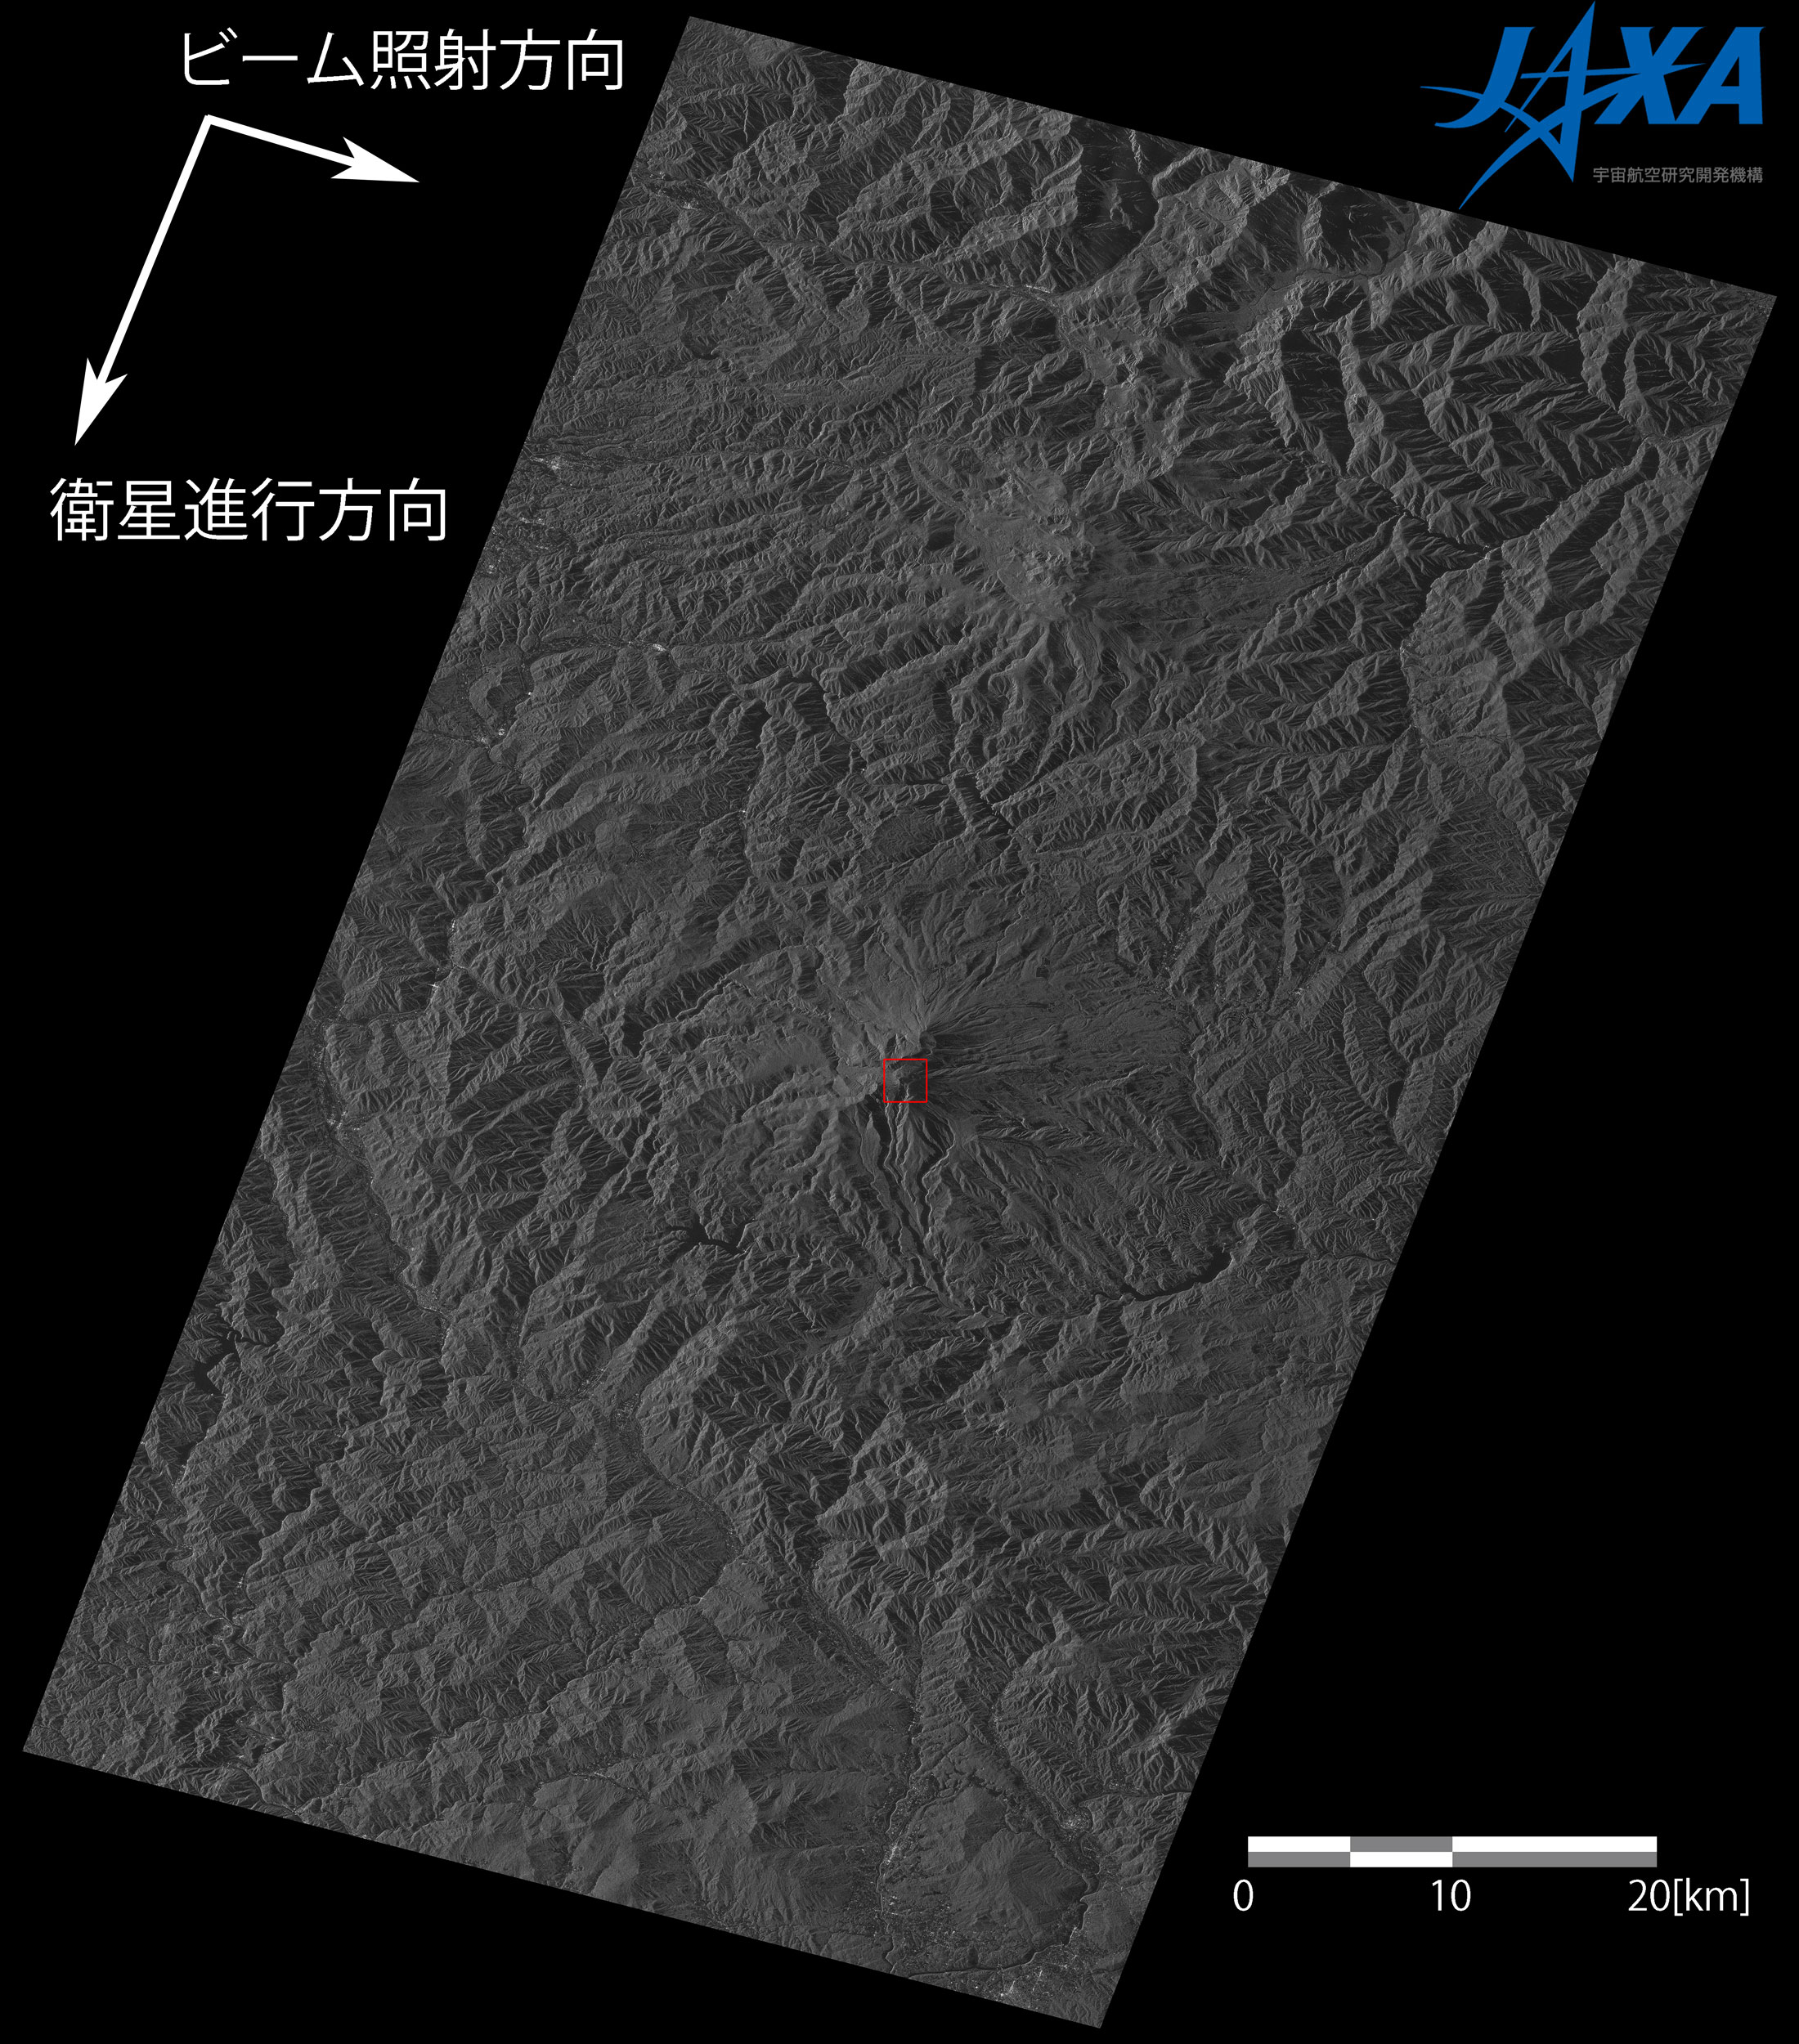 図2: PALSAR-2画像による御嶽山付近